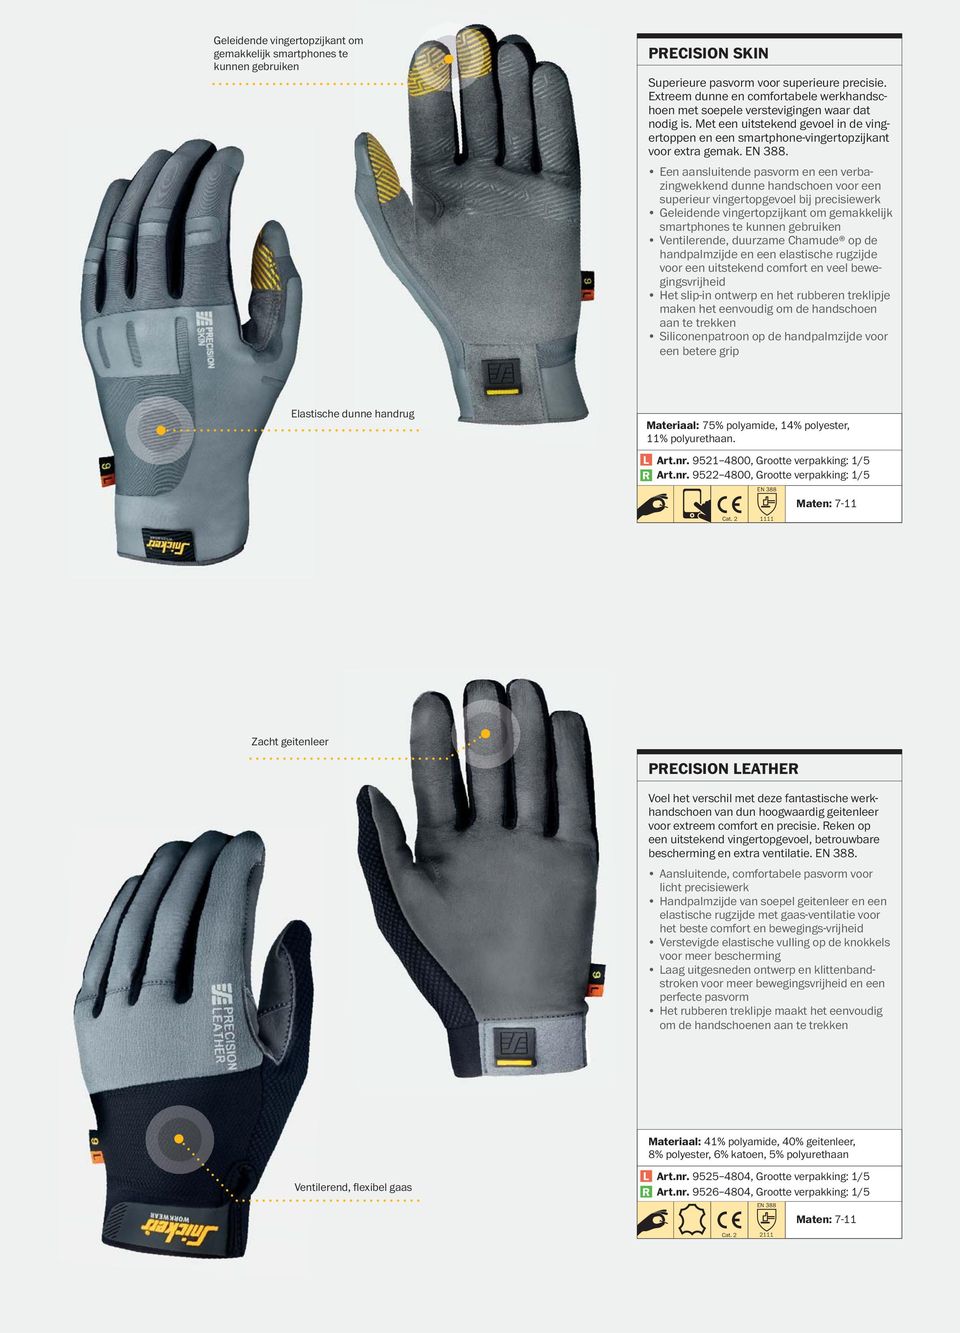 . Een aansluitende pasvorm en een verbazingwekkend dunne handschoen voor een superieur vingertopgevoel bij precisiewerk Geleidende vingertopzijkant om gemakkelijk smartphones te kunnen gebruiken